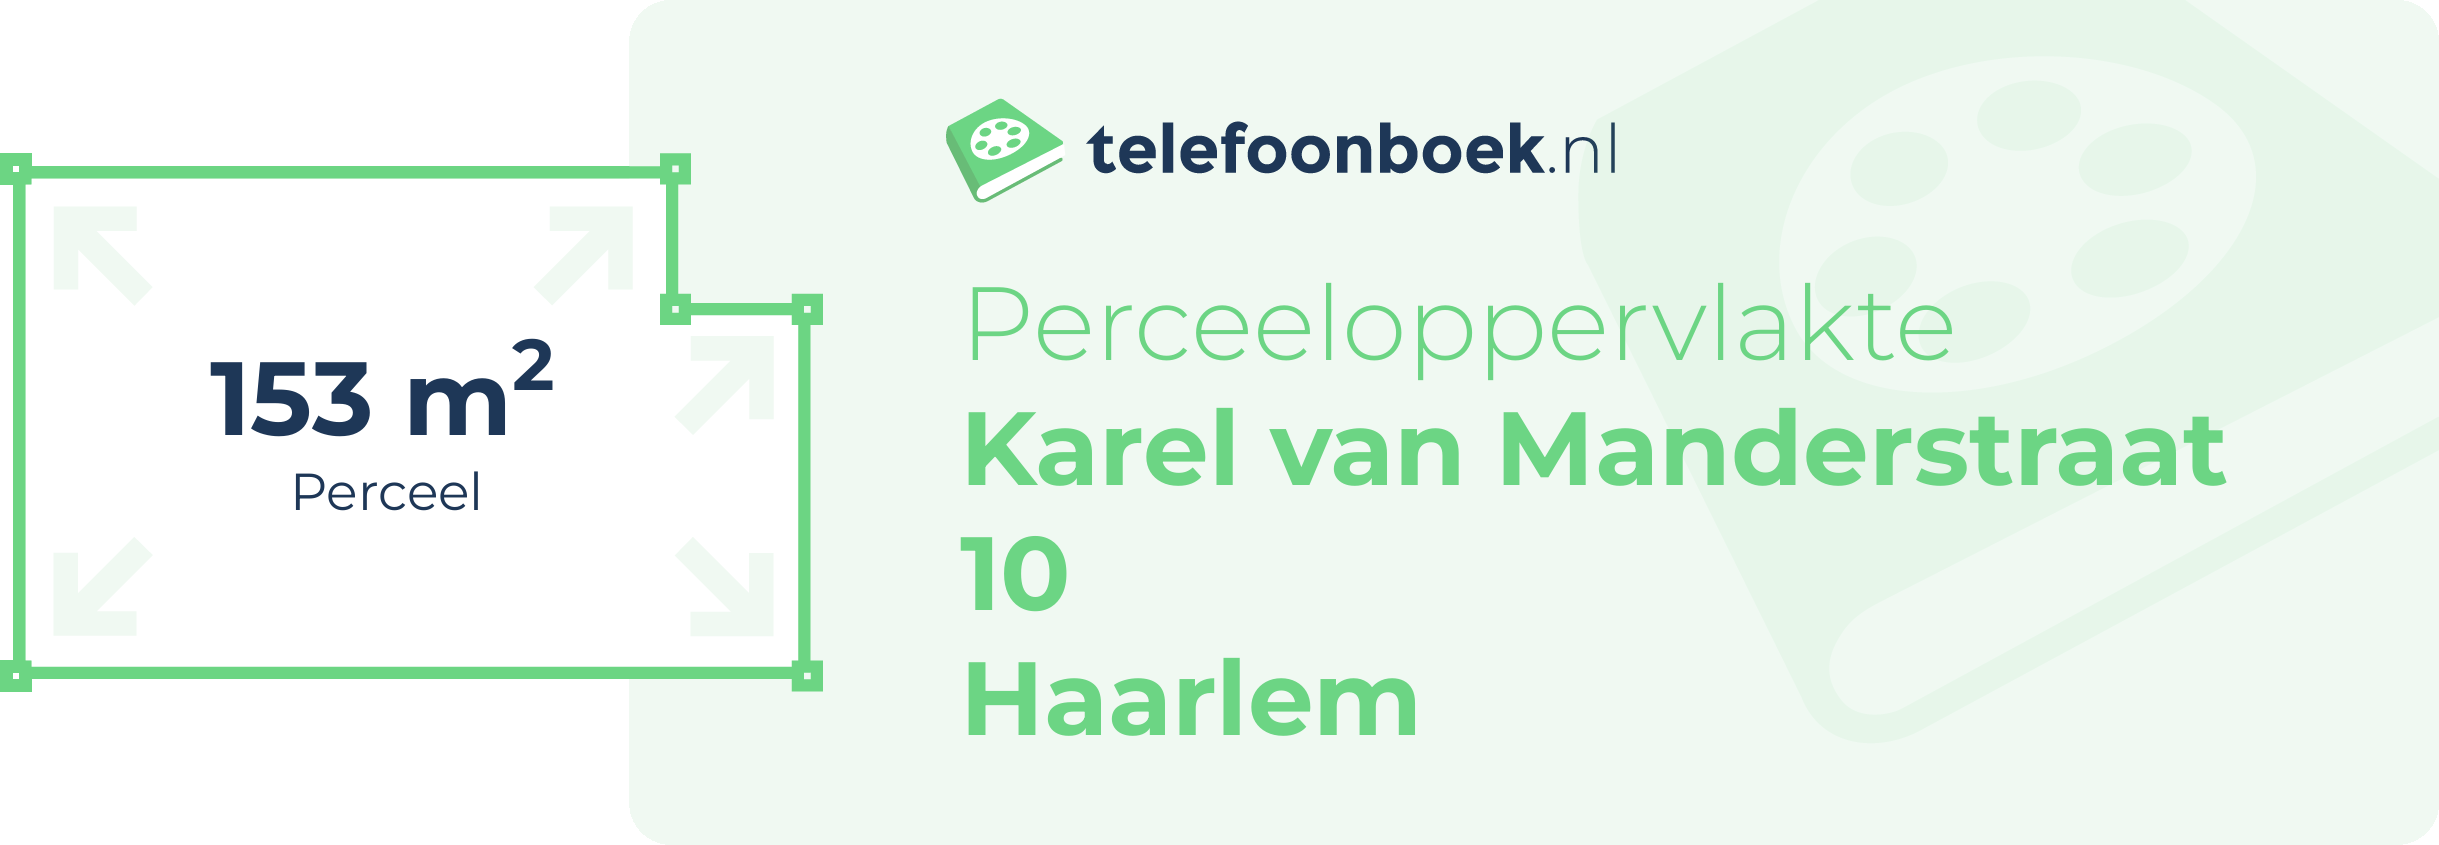 Perceeloppervlakte Karel Van Manderstraat 10 Haarlem